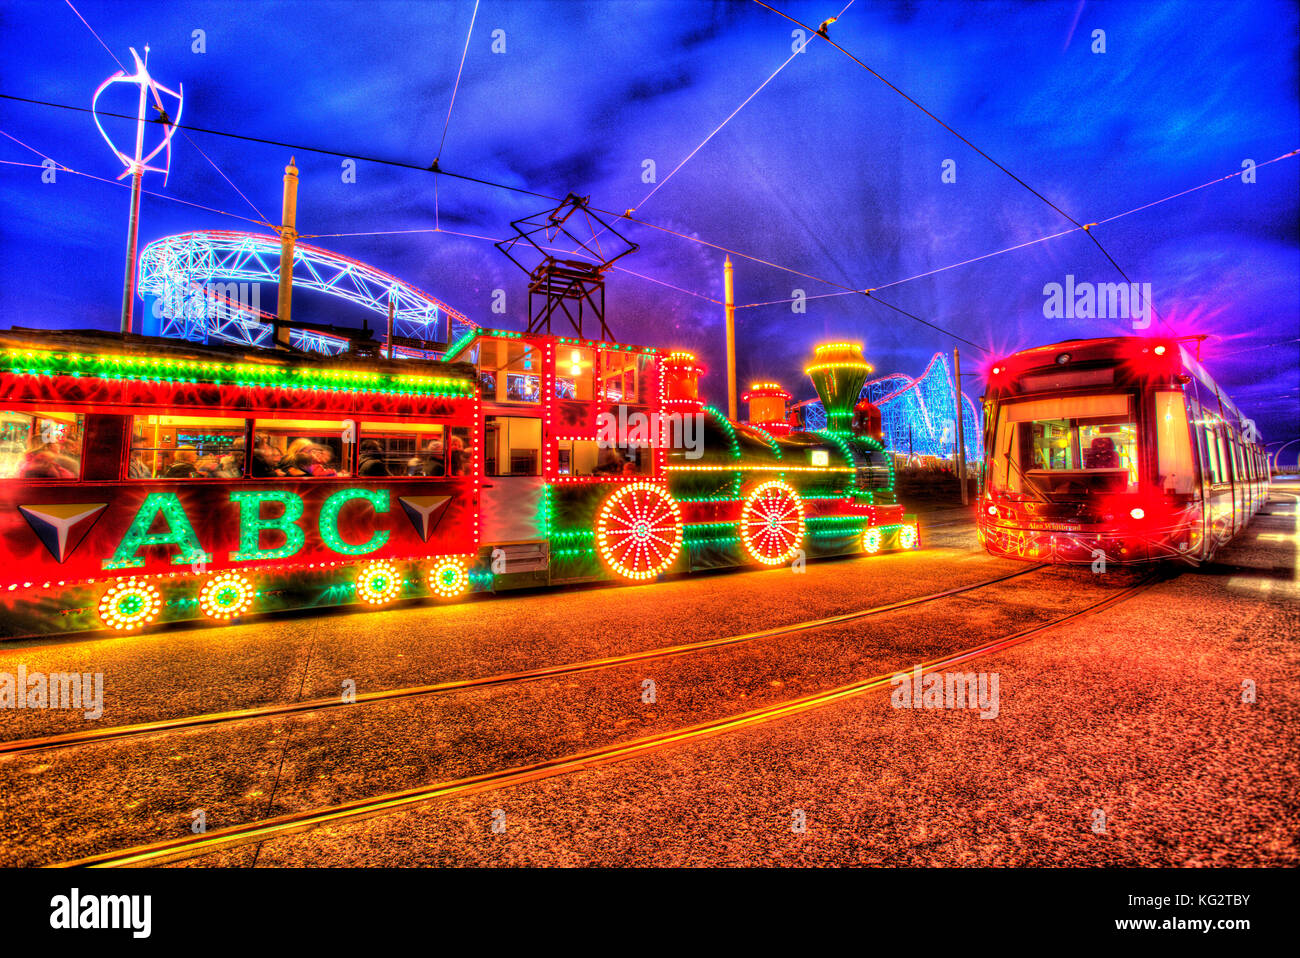 Ville de Blackpool, Angleterre. Vue de nuit de l'artistique allumé des tramways, au cours de la fête, avec l'illumination de Blackpool Pleasure Beach Blackpool Banque D'Images